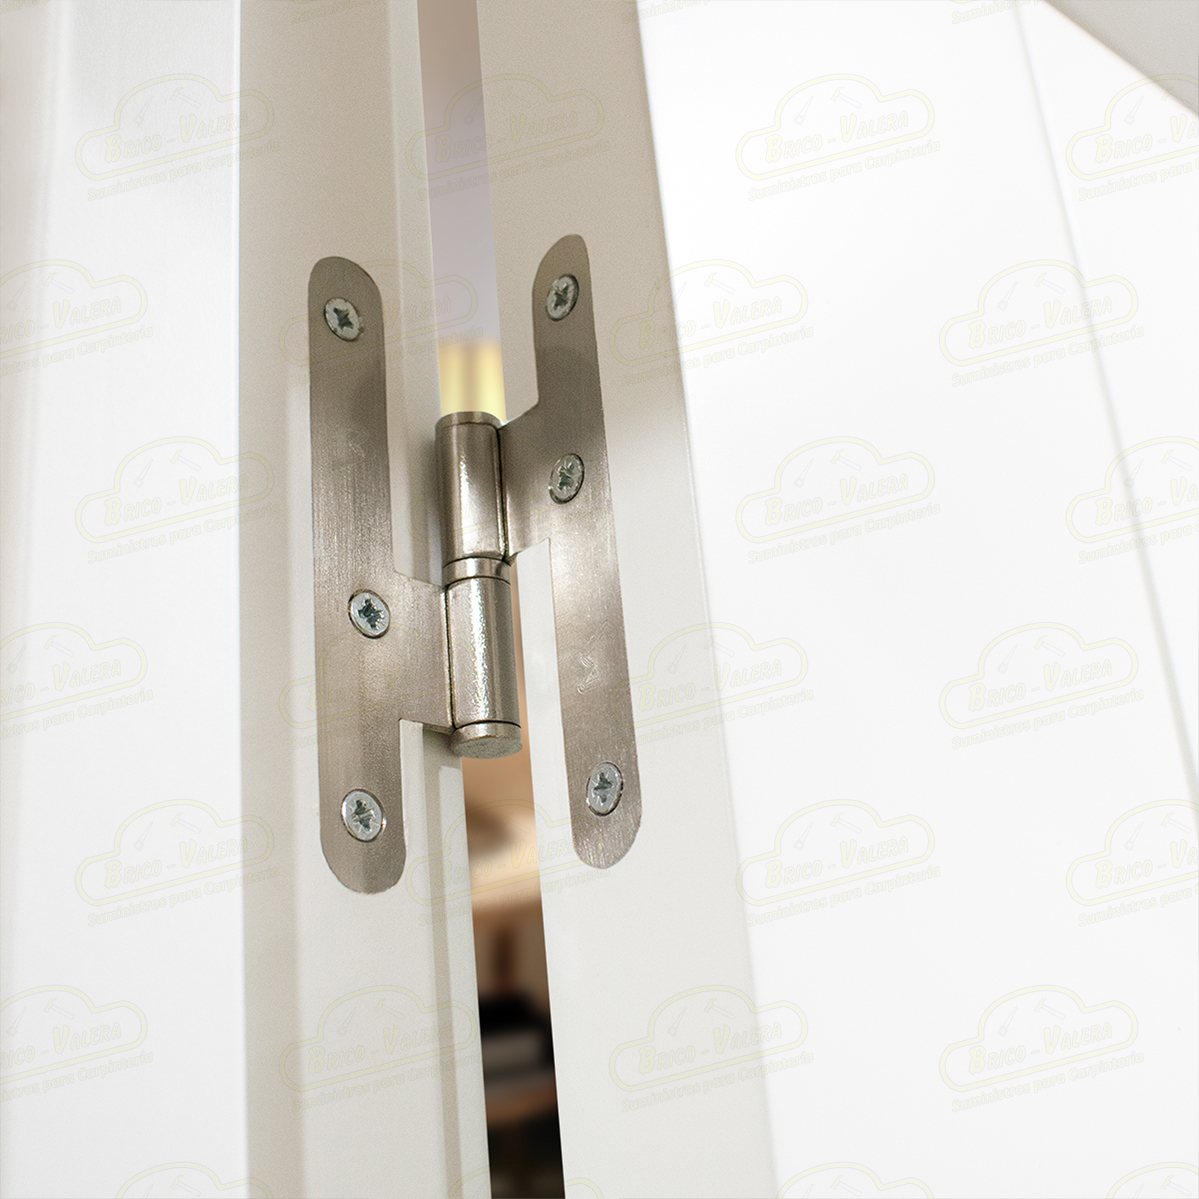 Puerta Premium PL1-ZV1 Lacada Blanca con Manillas Doradas de Interior en Block (Maciza)